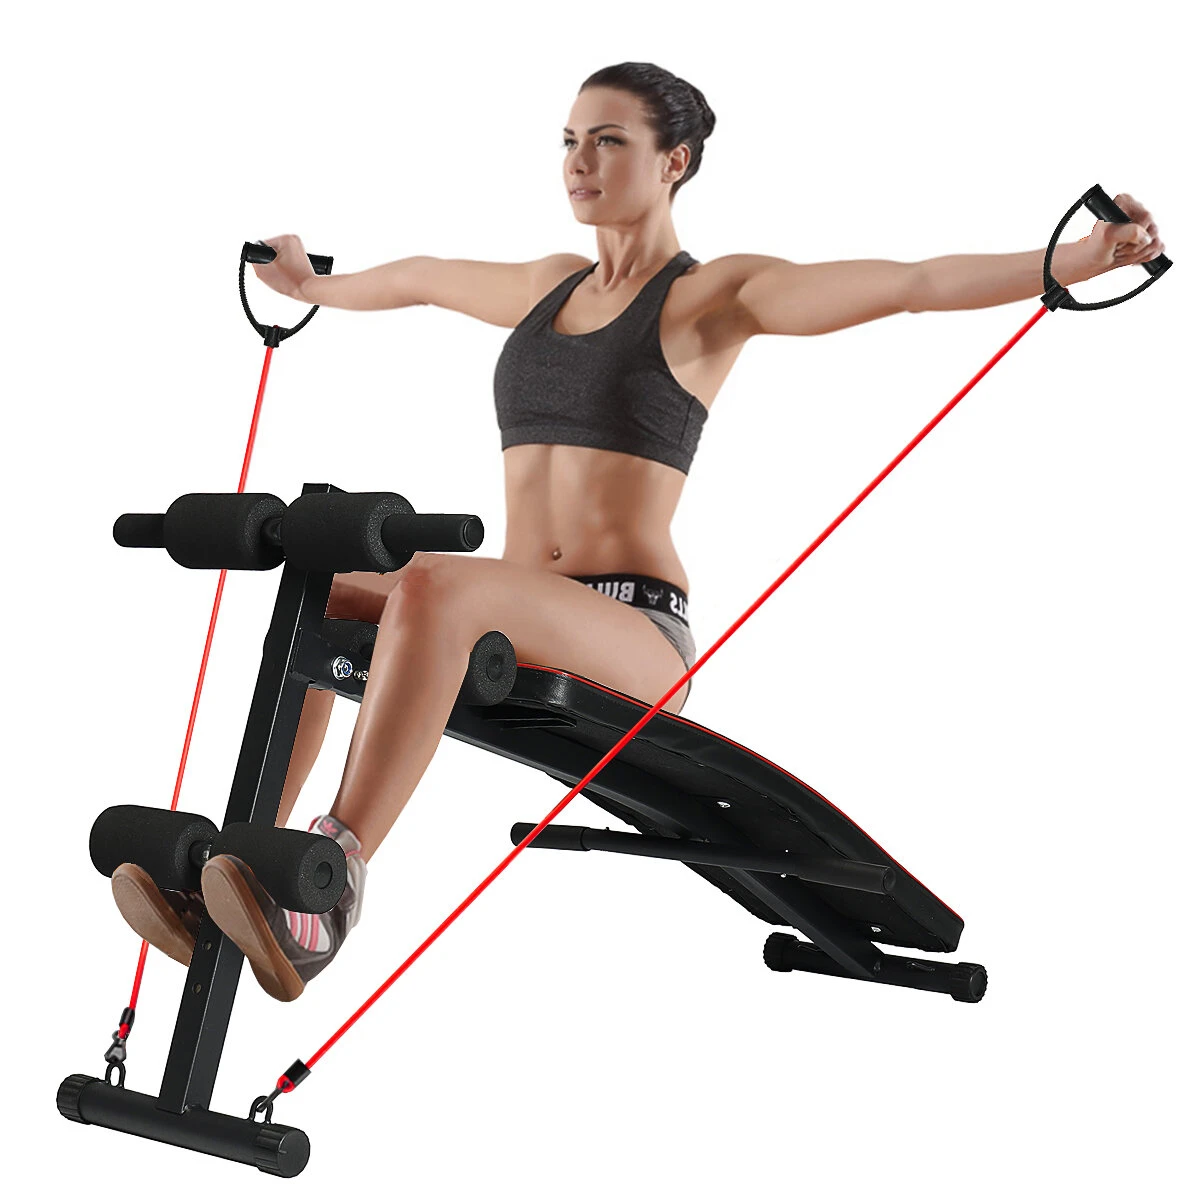 Στα 46,40€ από αποθήκη Τσεχίας | Adjustable Sit up Bench Multifunctional Folding Abdominal Muscle Training Body building Home Gym Fitness Equipment